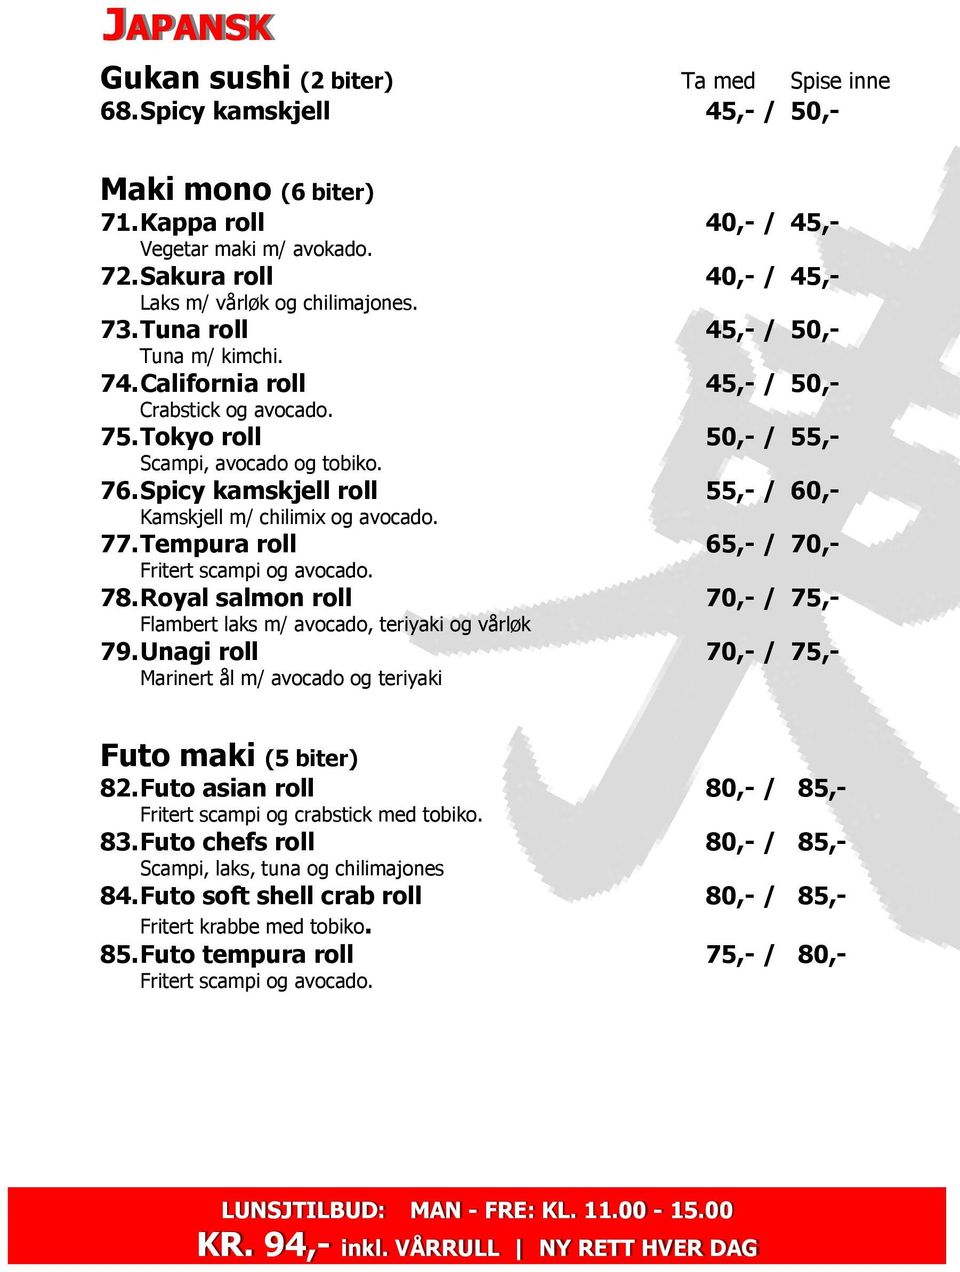 Tokyo roll 50,- / 55,- Scampi, avocado og tobiko. 76. Spicy kamskjell roll 55,- / 60,- Kamskjell m/ chilimix og avocado. 77. Tempura roll 65,- / 70,- Fritert scampi og avocado. 78.